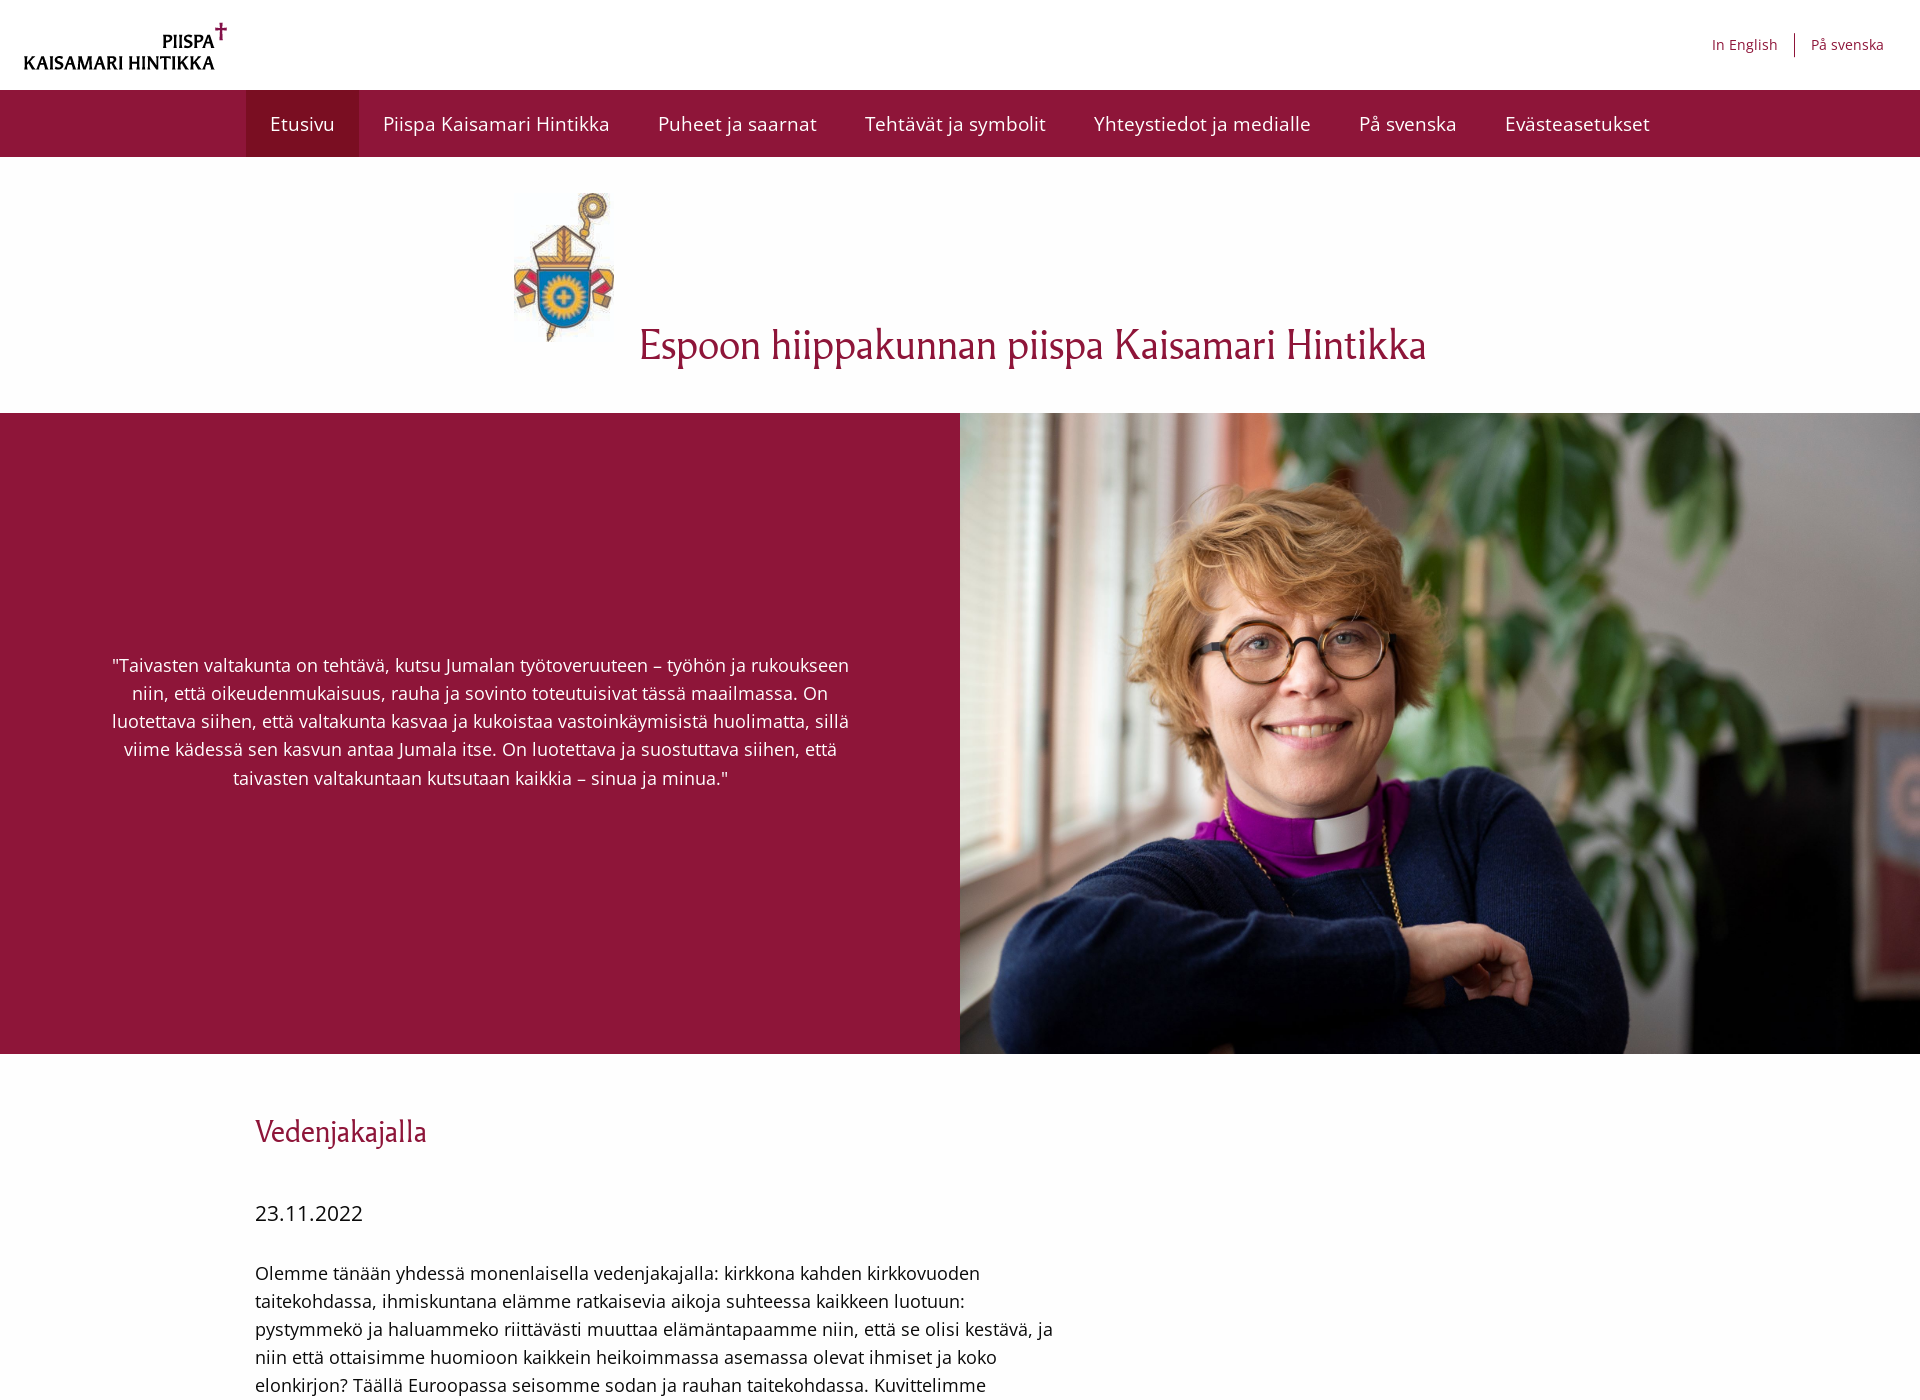 Screenshot for piispakaisamarihintikka.fi